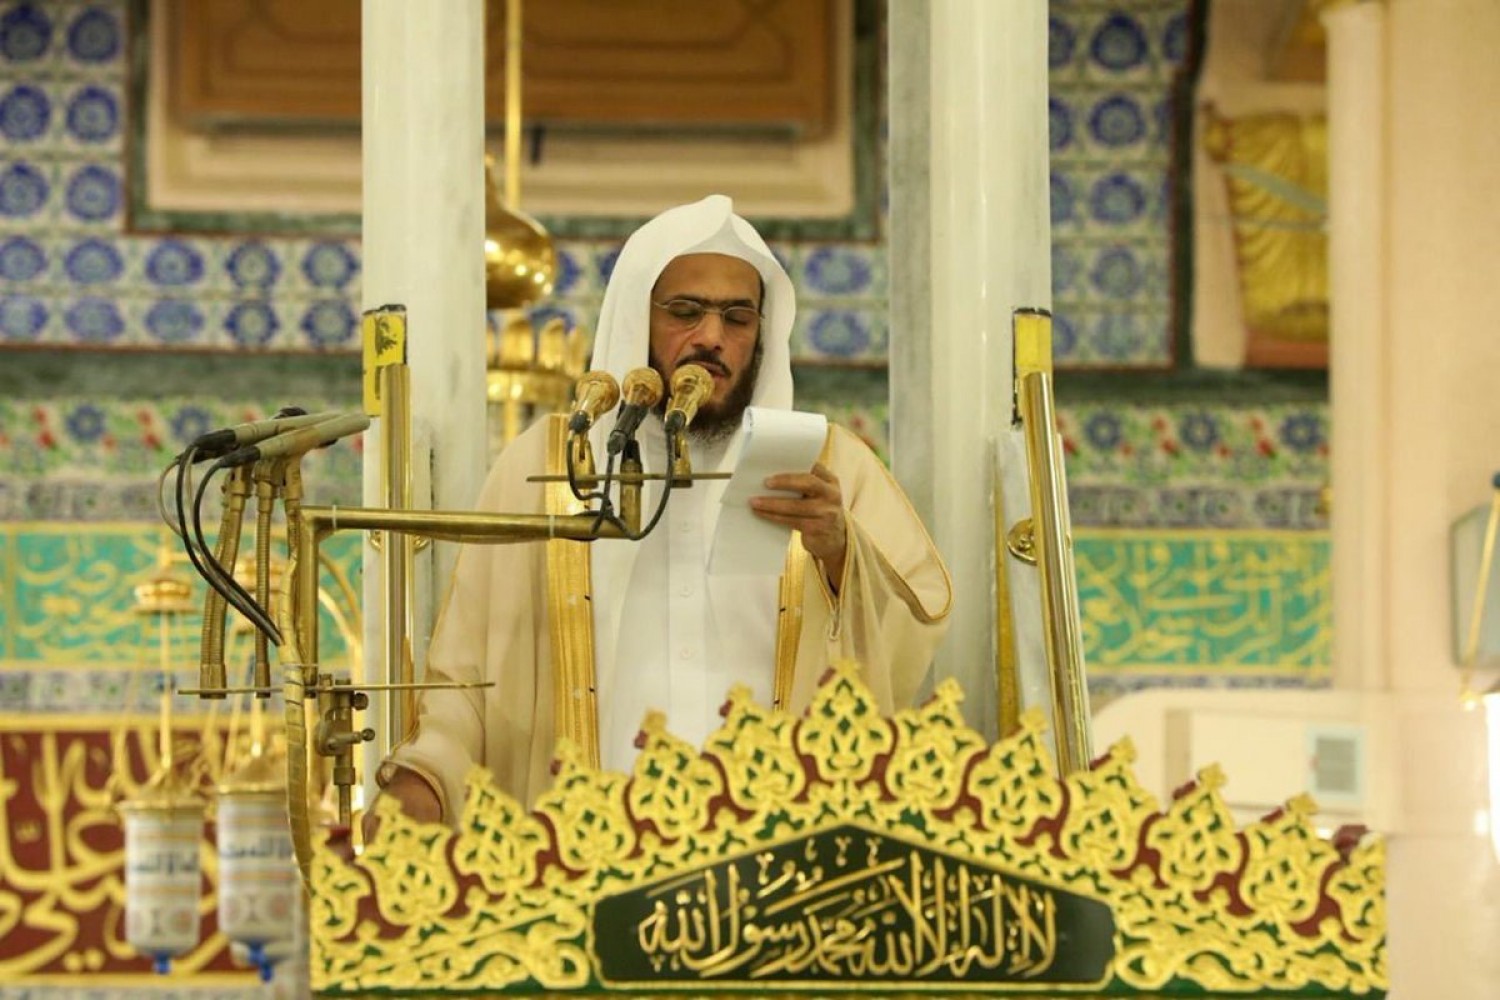 10 5 - خطيب المسجد النبوي: ليلة القدر تروي ظمأ القلوب المتعطشة للعفو والرحمة